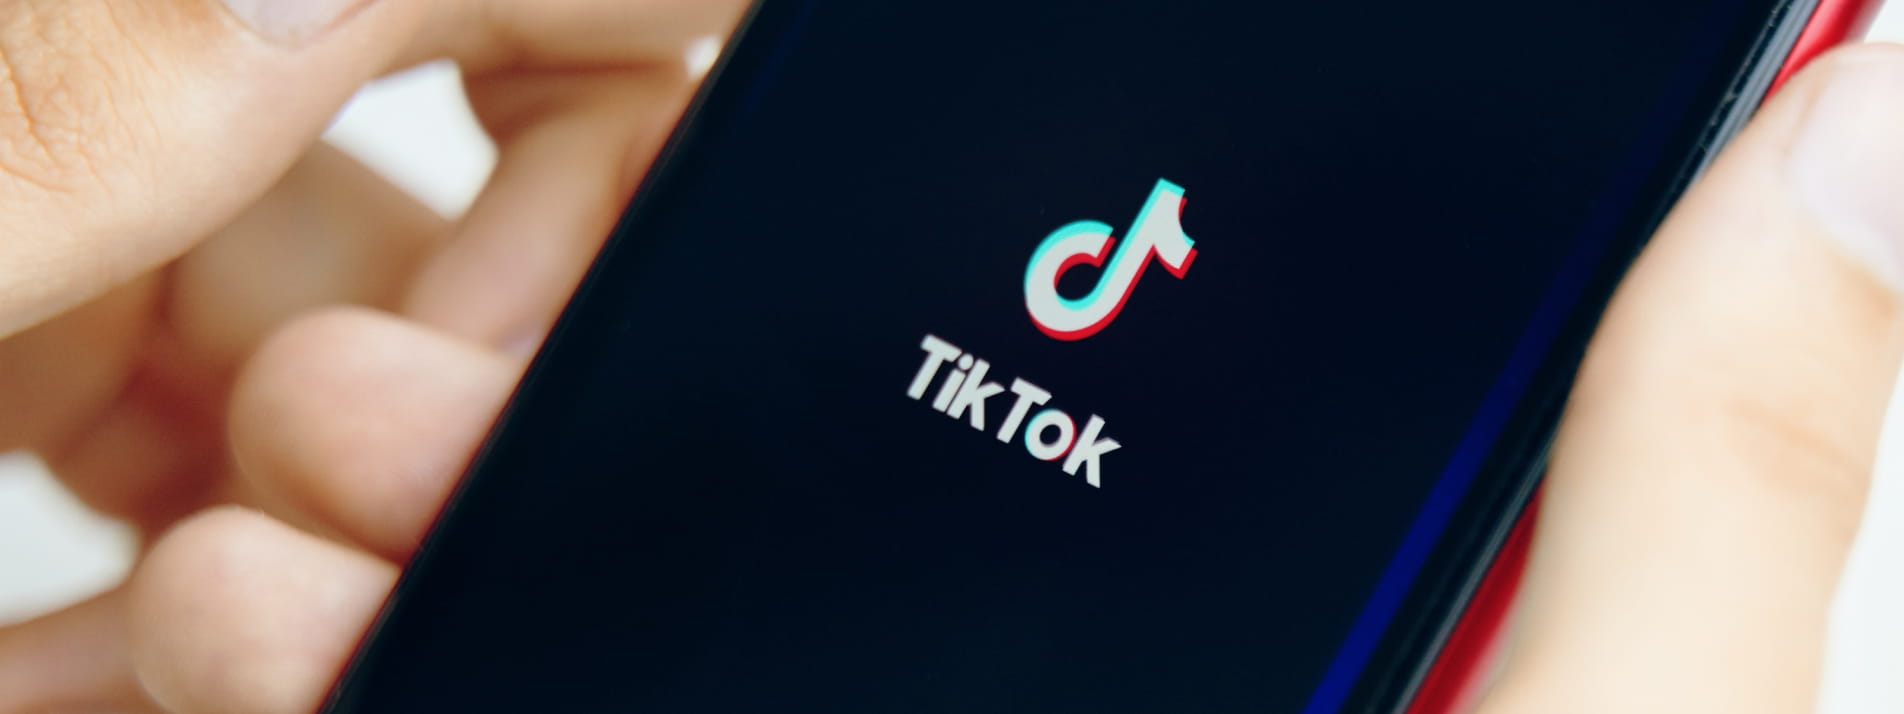 Qué es Tiktok y cómo subir tu primer vídeo